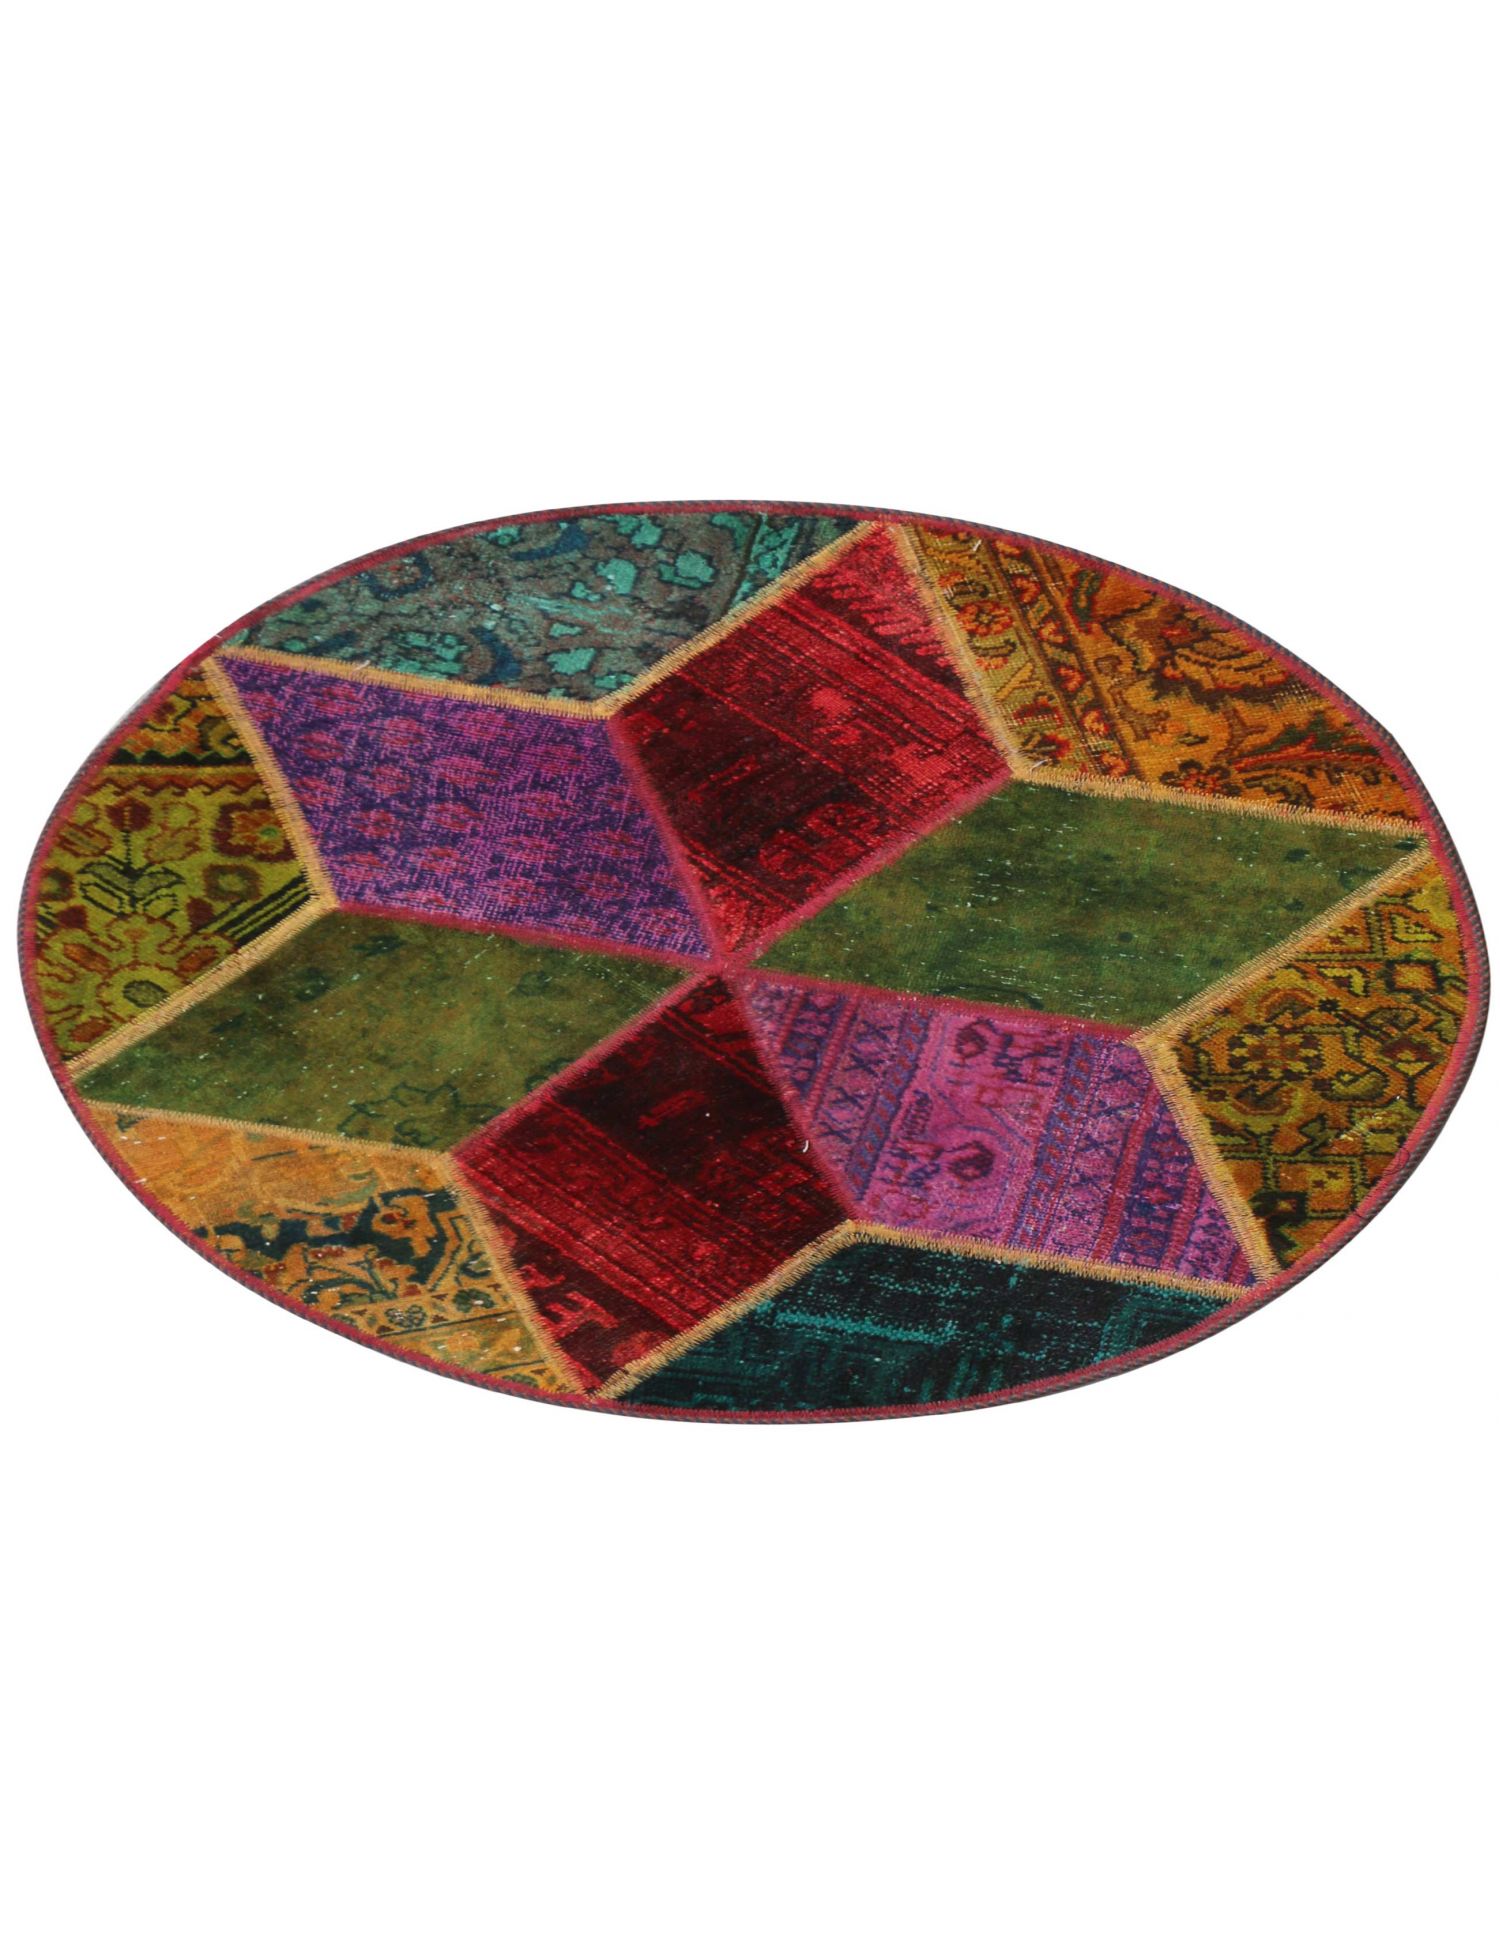 Vintage Teppich  mehrfarbig <br/>100 x 100 cm